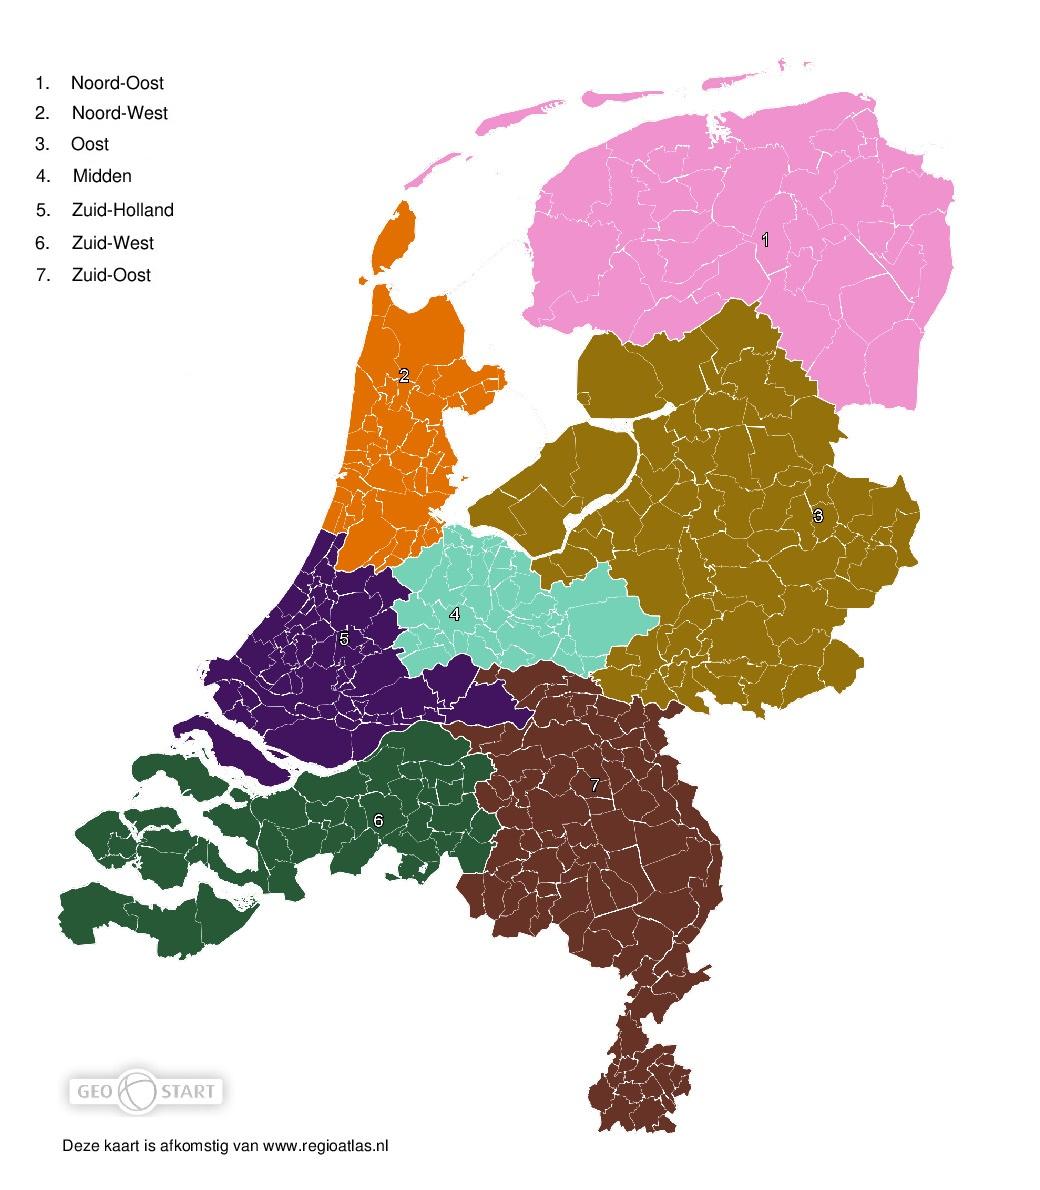 Afbeelding van een kaart van Nederland waarbij Nederland is verdeeld in 7 regio's: Noord, Midden-Oost, Midden, Zuid-Oost, Zuid-West, West, Noord-West